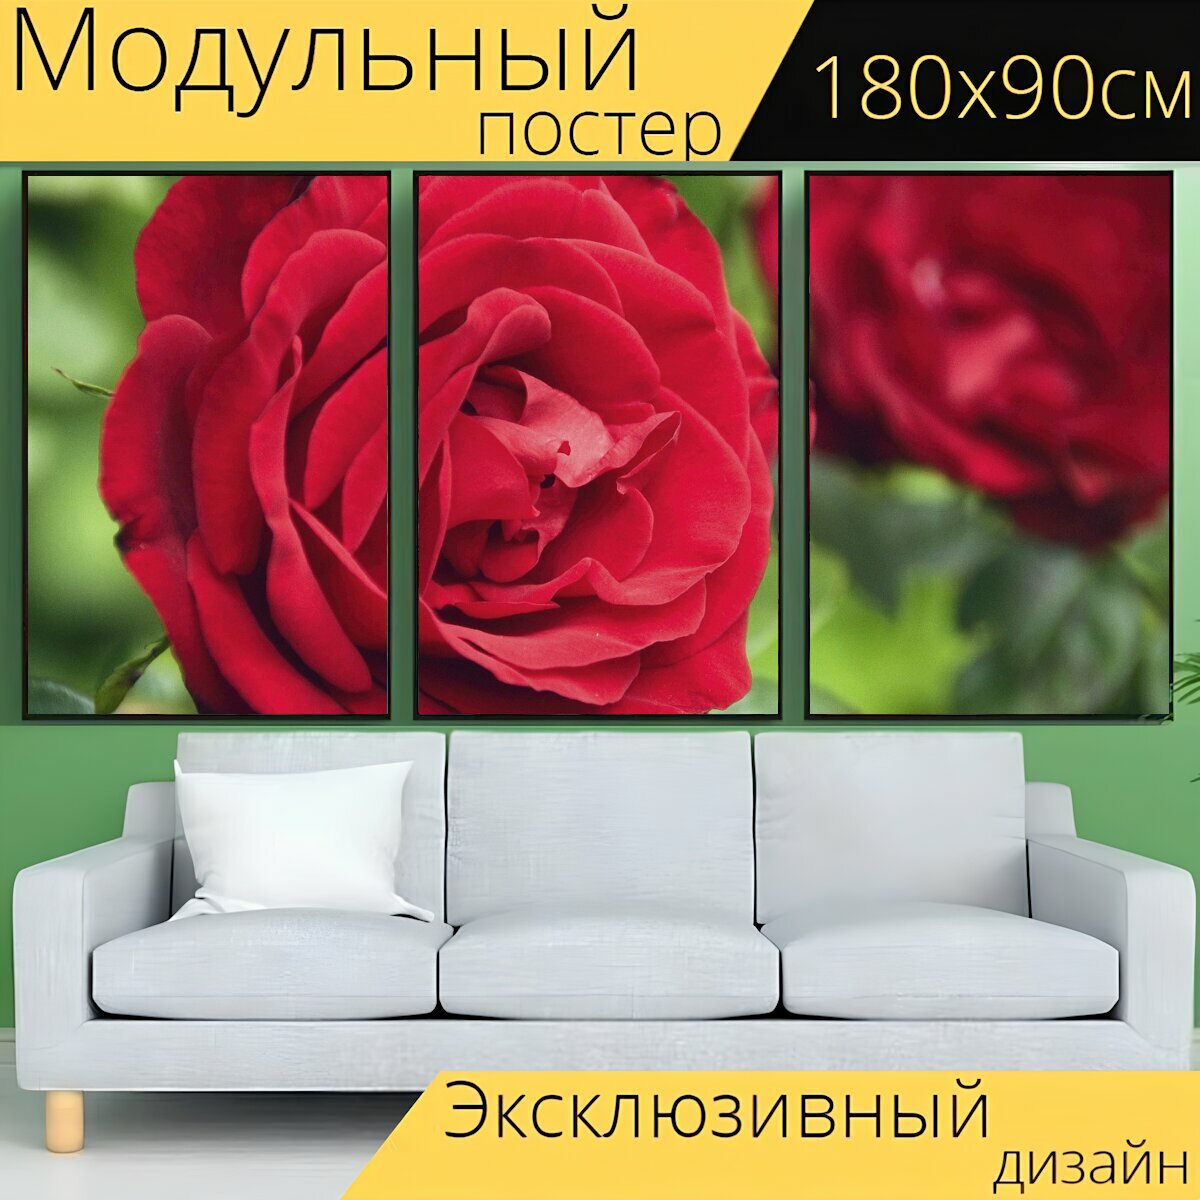 Модульный постер "Роза, цветок, красный" 180 x 90 см. для интерьера